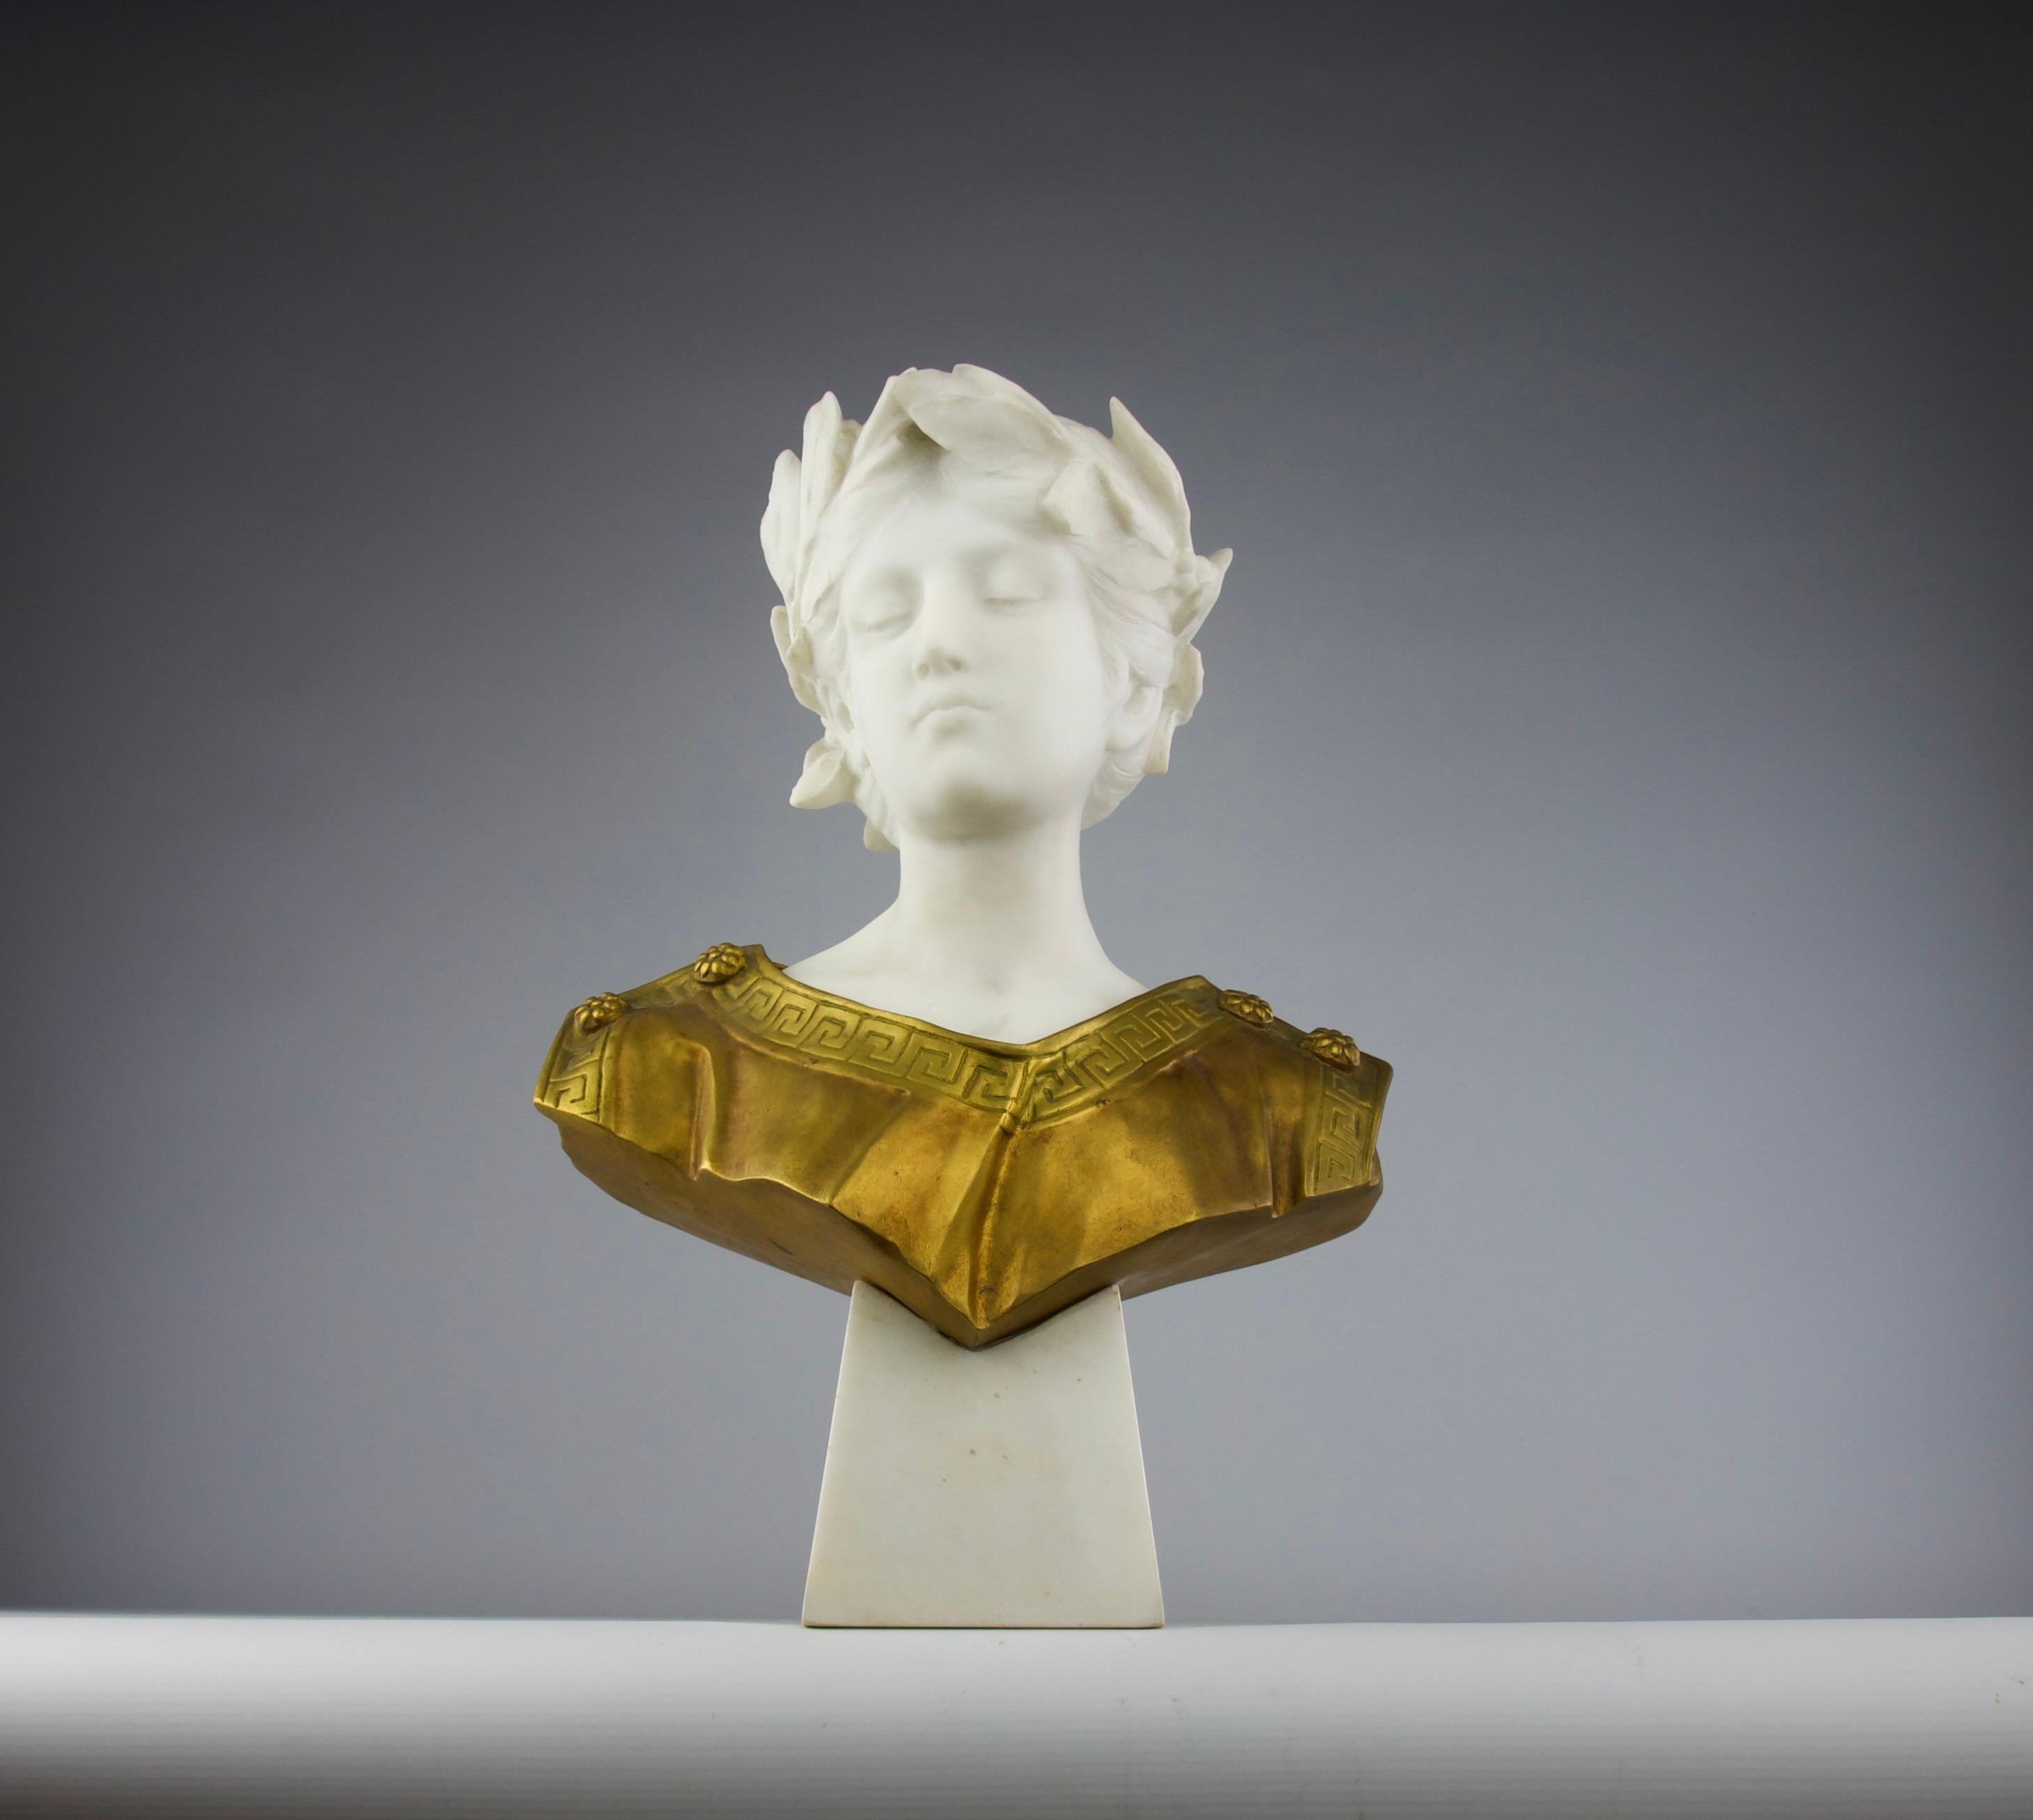 Superbe buste en marbre et bronze doré représentant un jeune empereur avec sa robe et sa couronne de laurier. Italie début du 20ème siècle, de style romantique. 

Signé A. Fagioli.

Dimensions en cm ( H x L x l ) : 42 x 28 x 20,5

Expédition